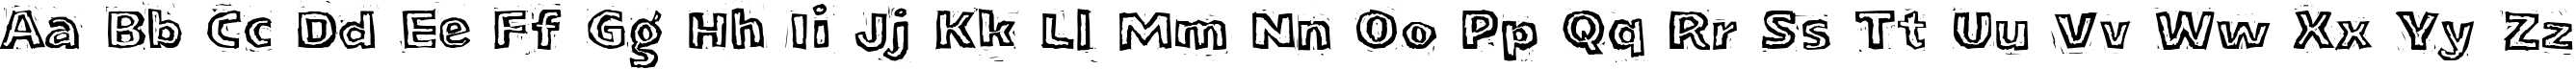 Пример написания английского алфавита шрифтом LogJam Inline